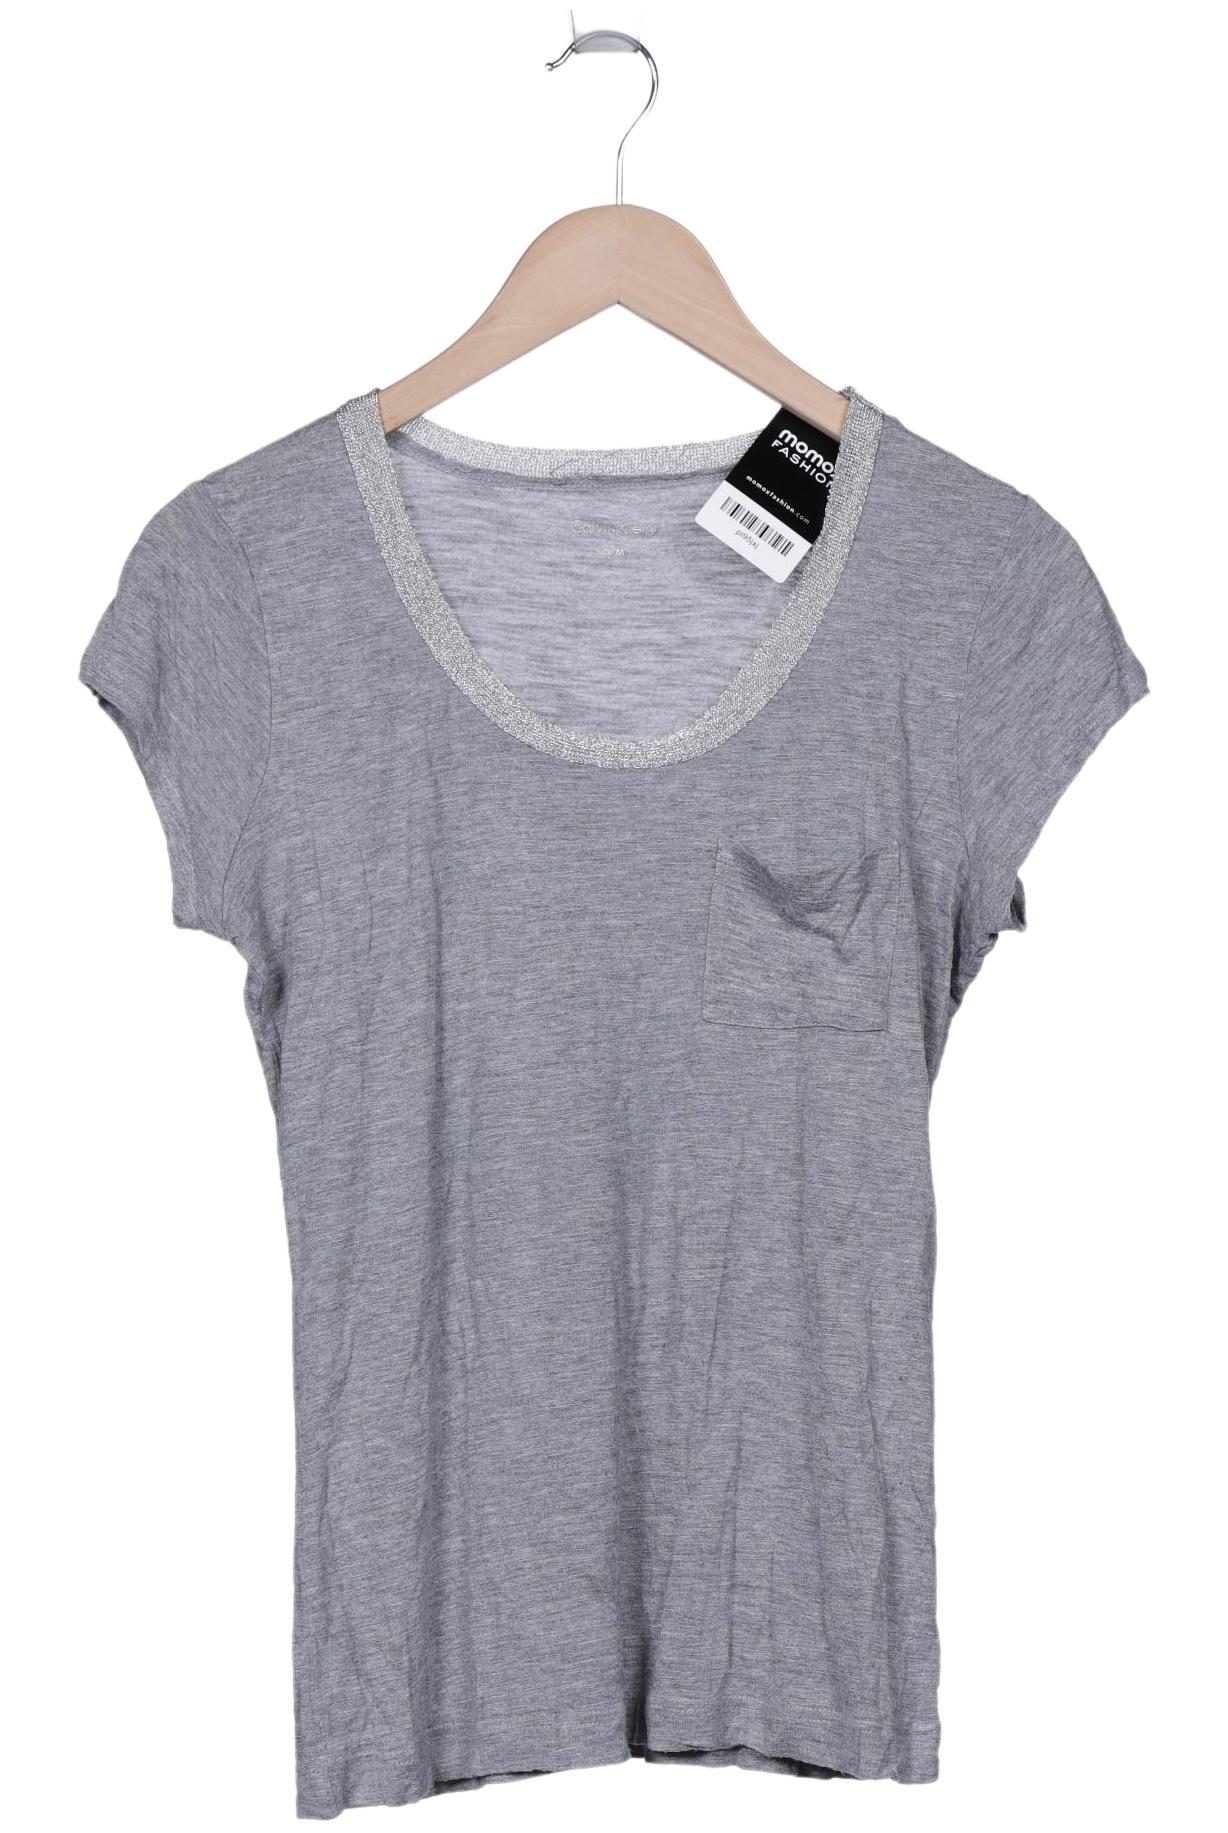 Calvin Klein Damen T-Shirt, grau, Gr. 38 von Calvin Klein